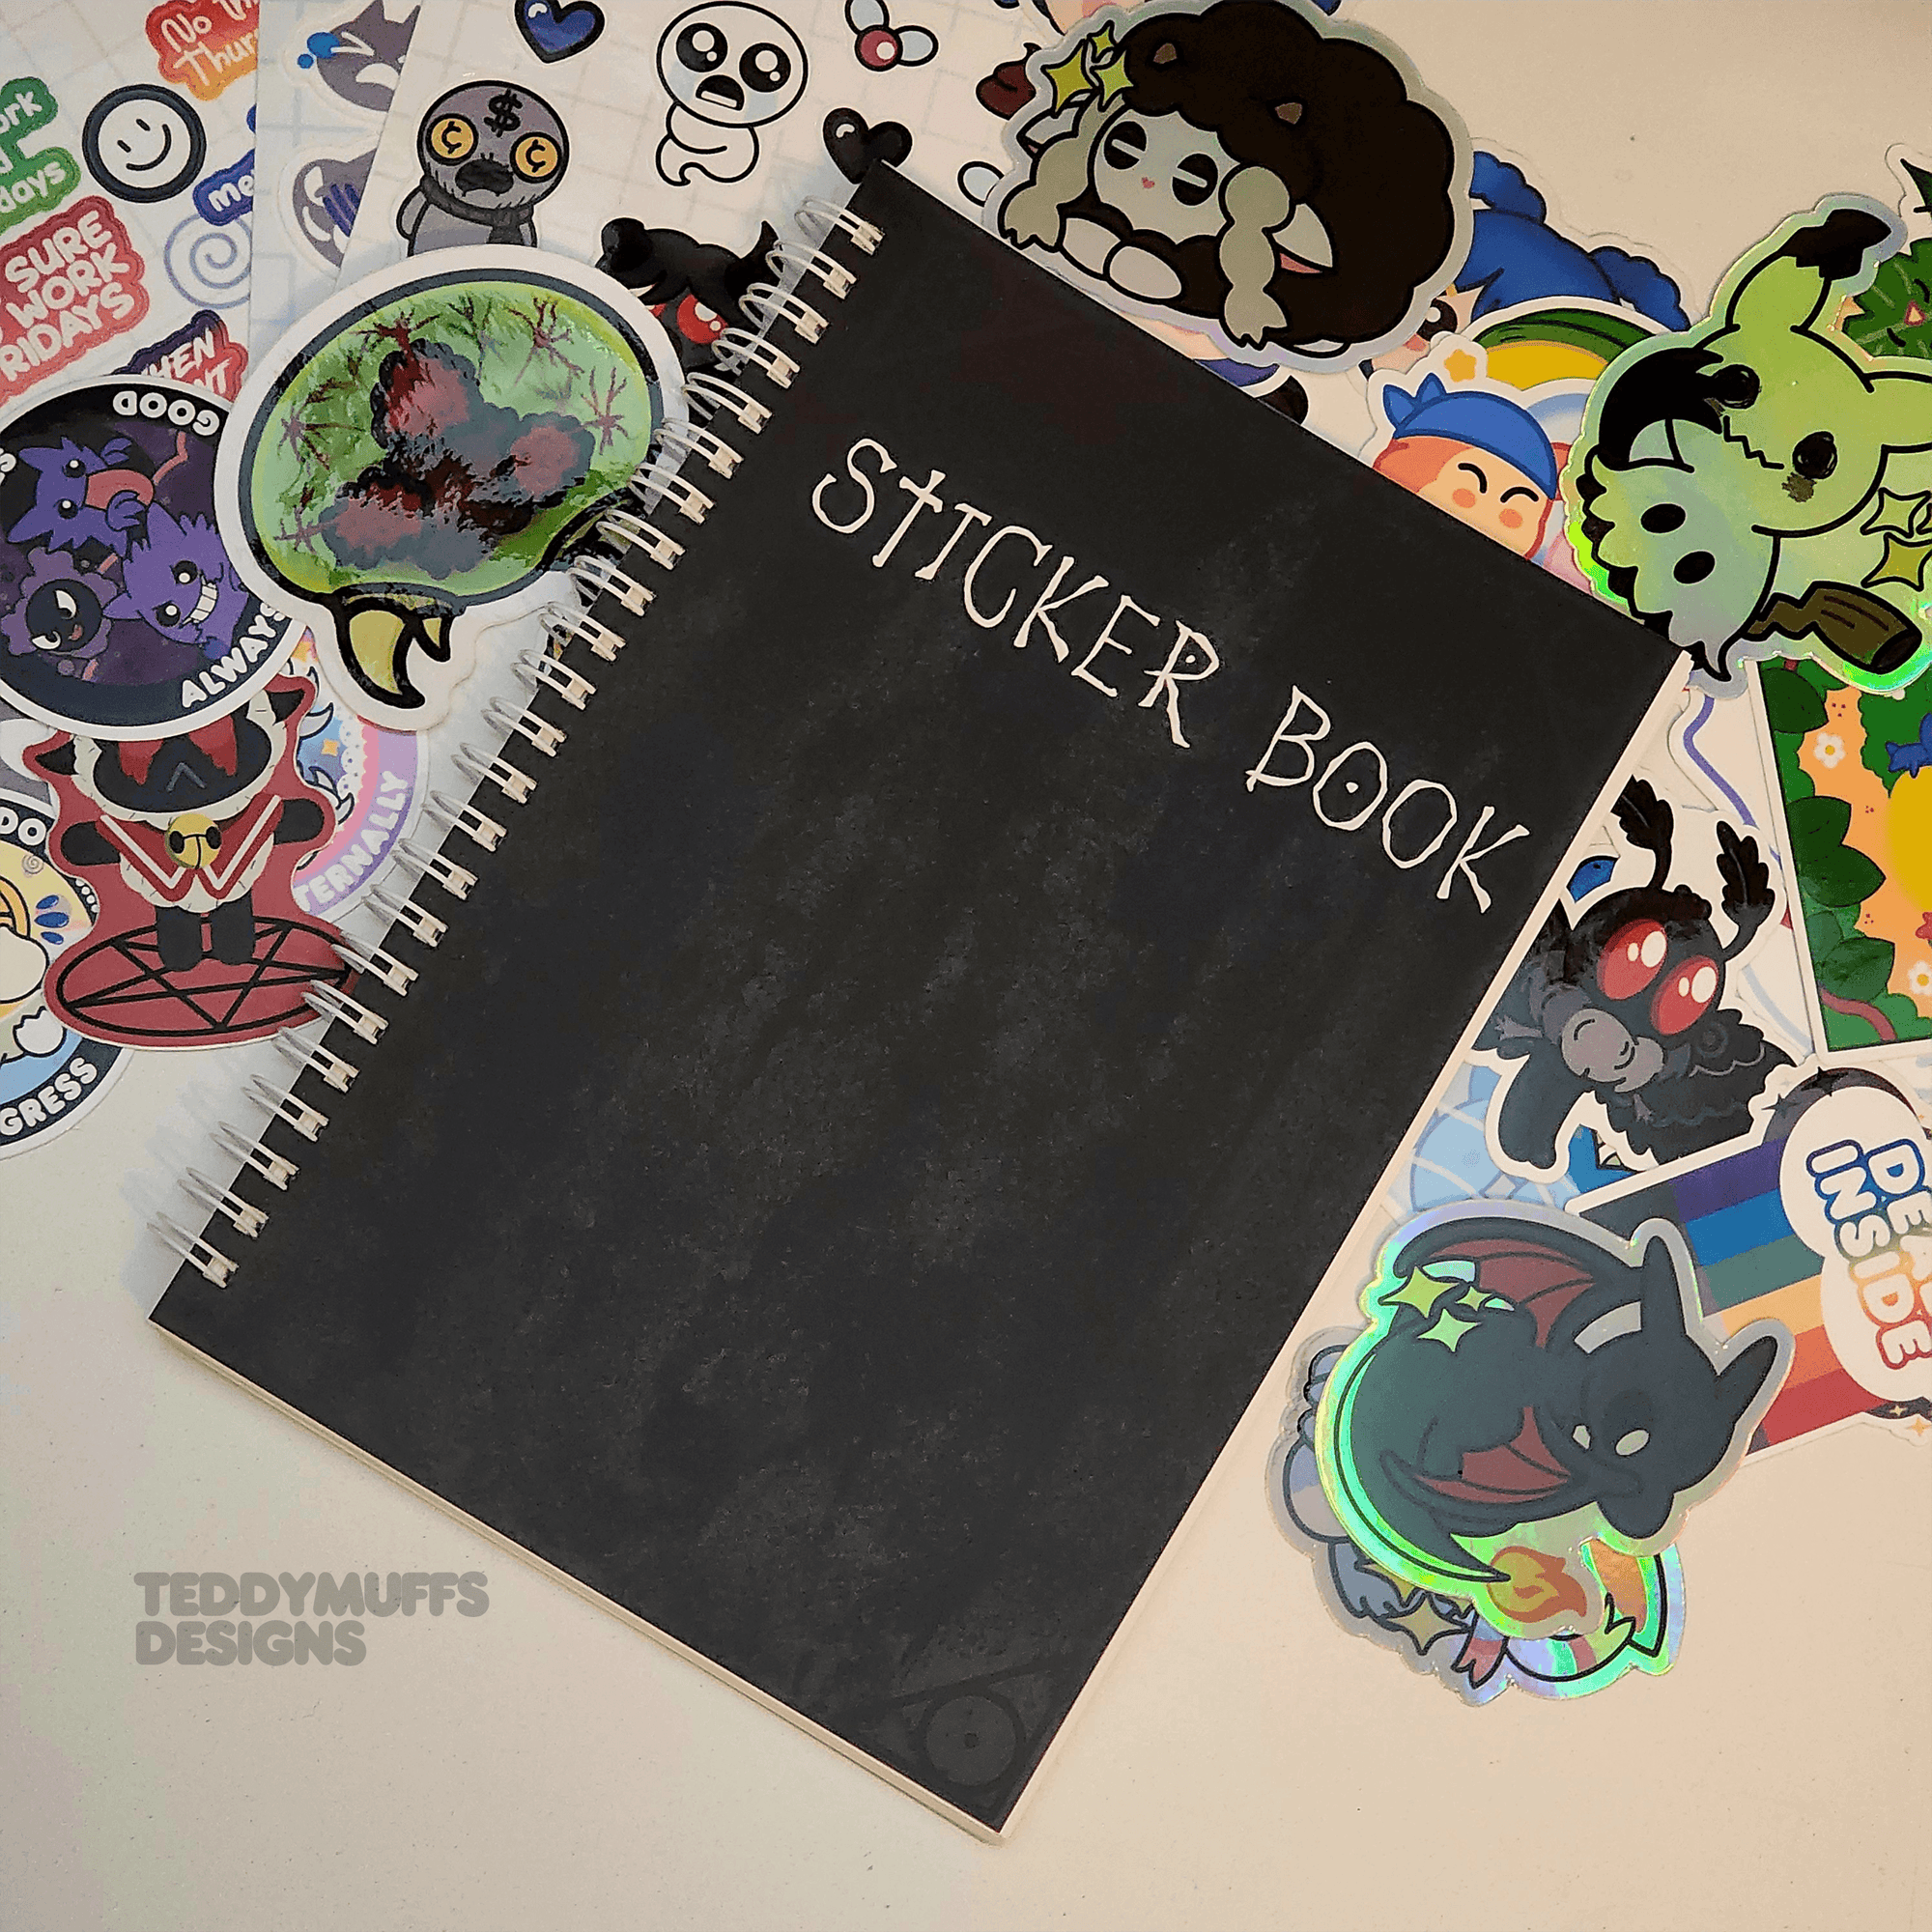 Death Note Sticker Book - Teddymuffs Designs